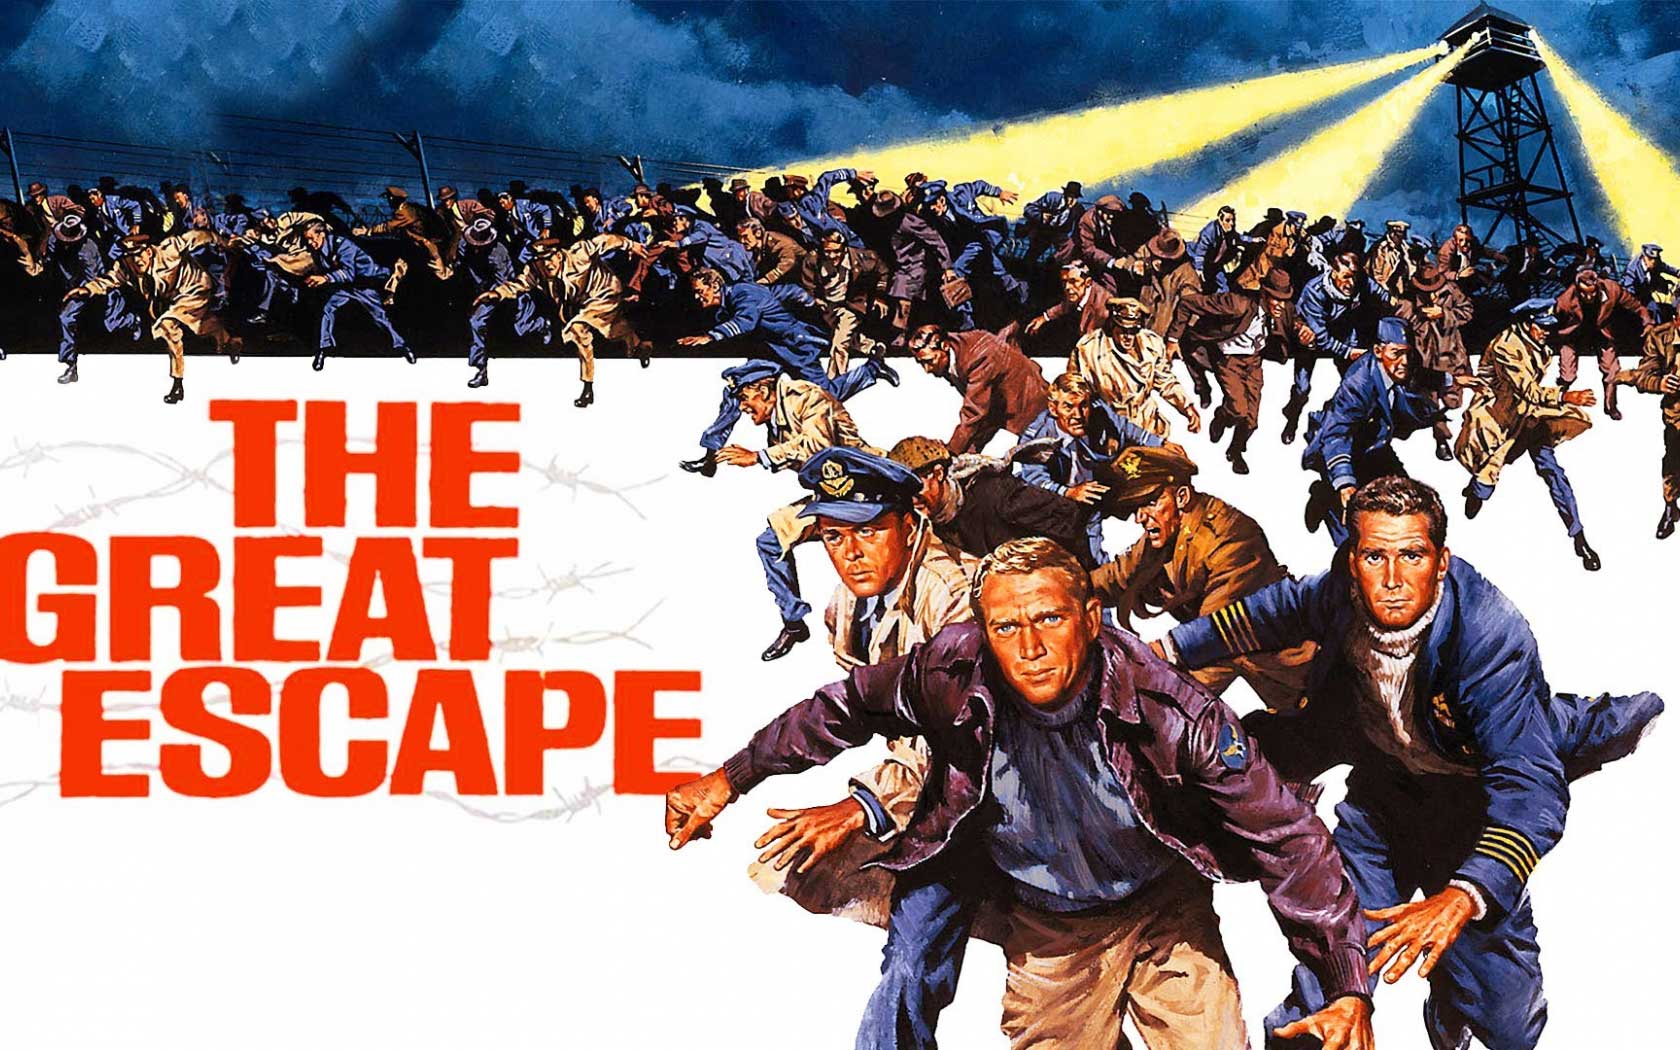 Cuộc đào thoát vĩ đại - The great escape (1963)